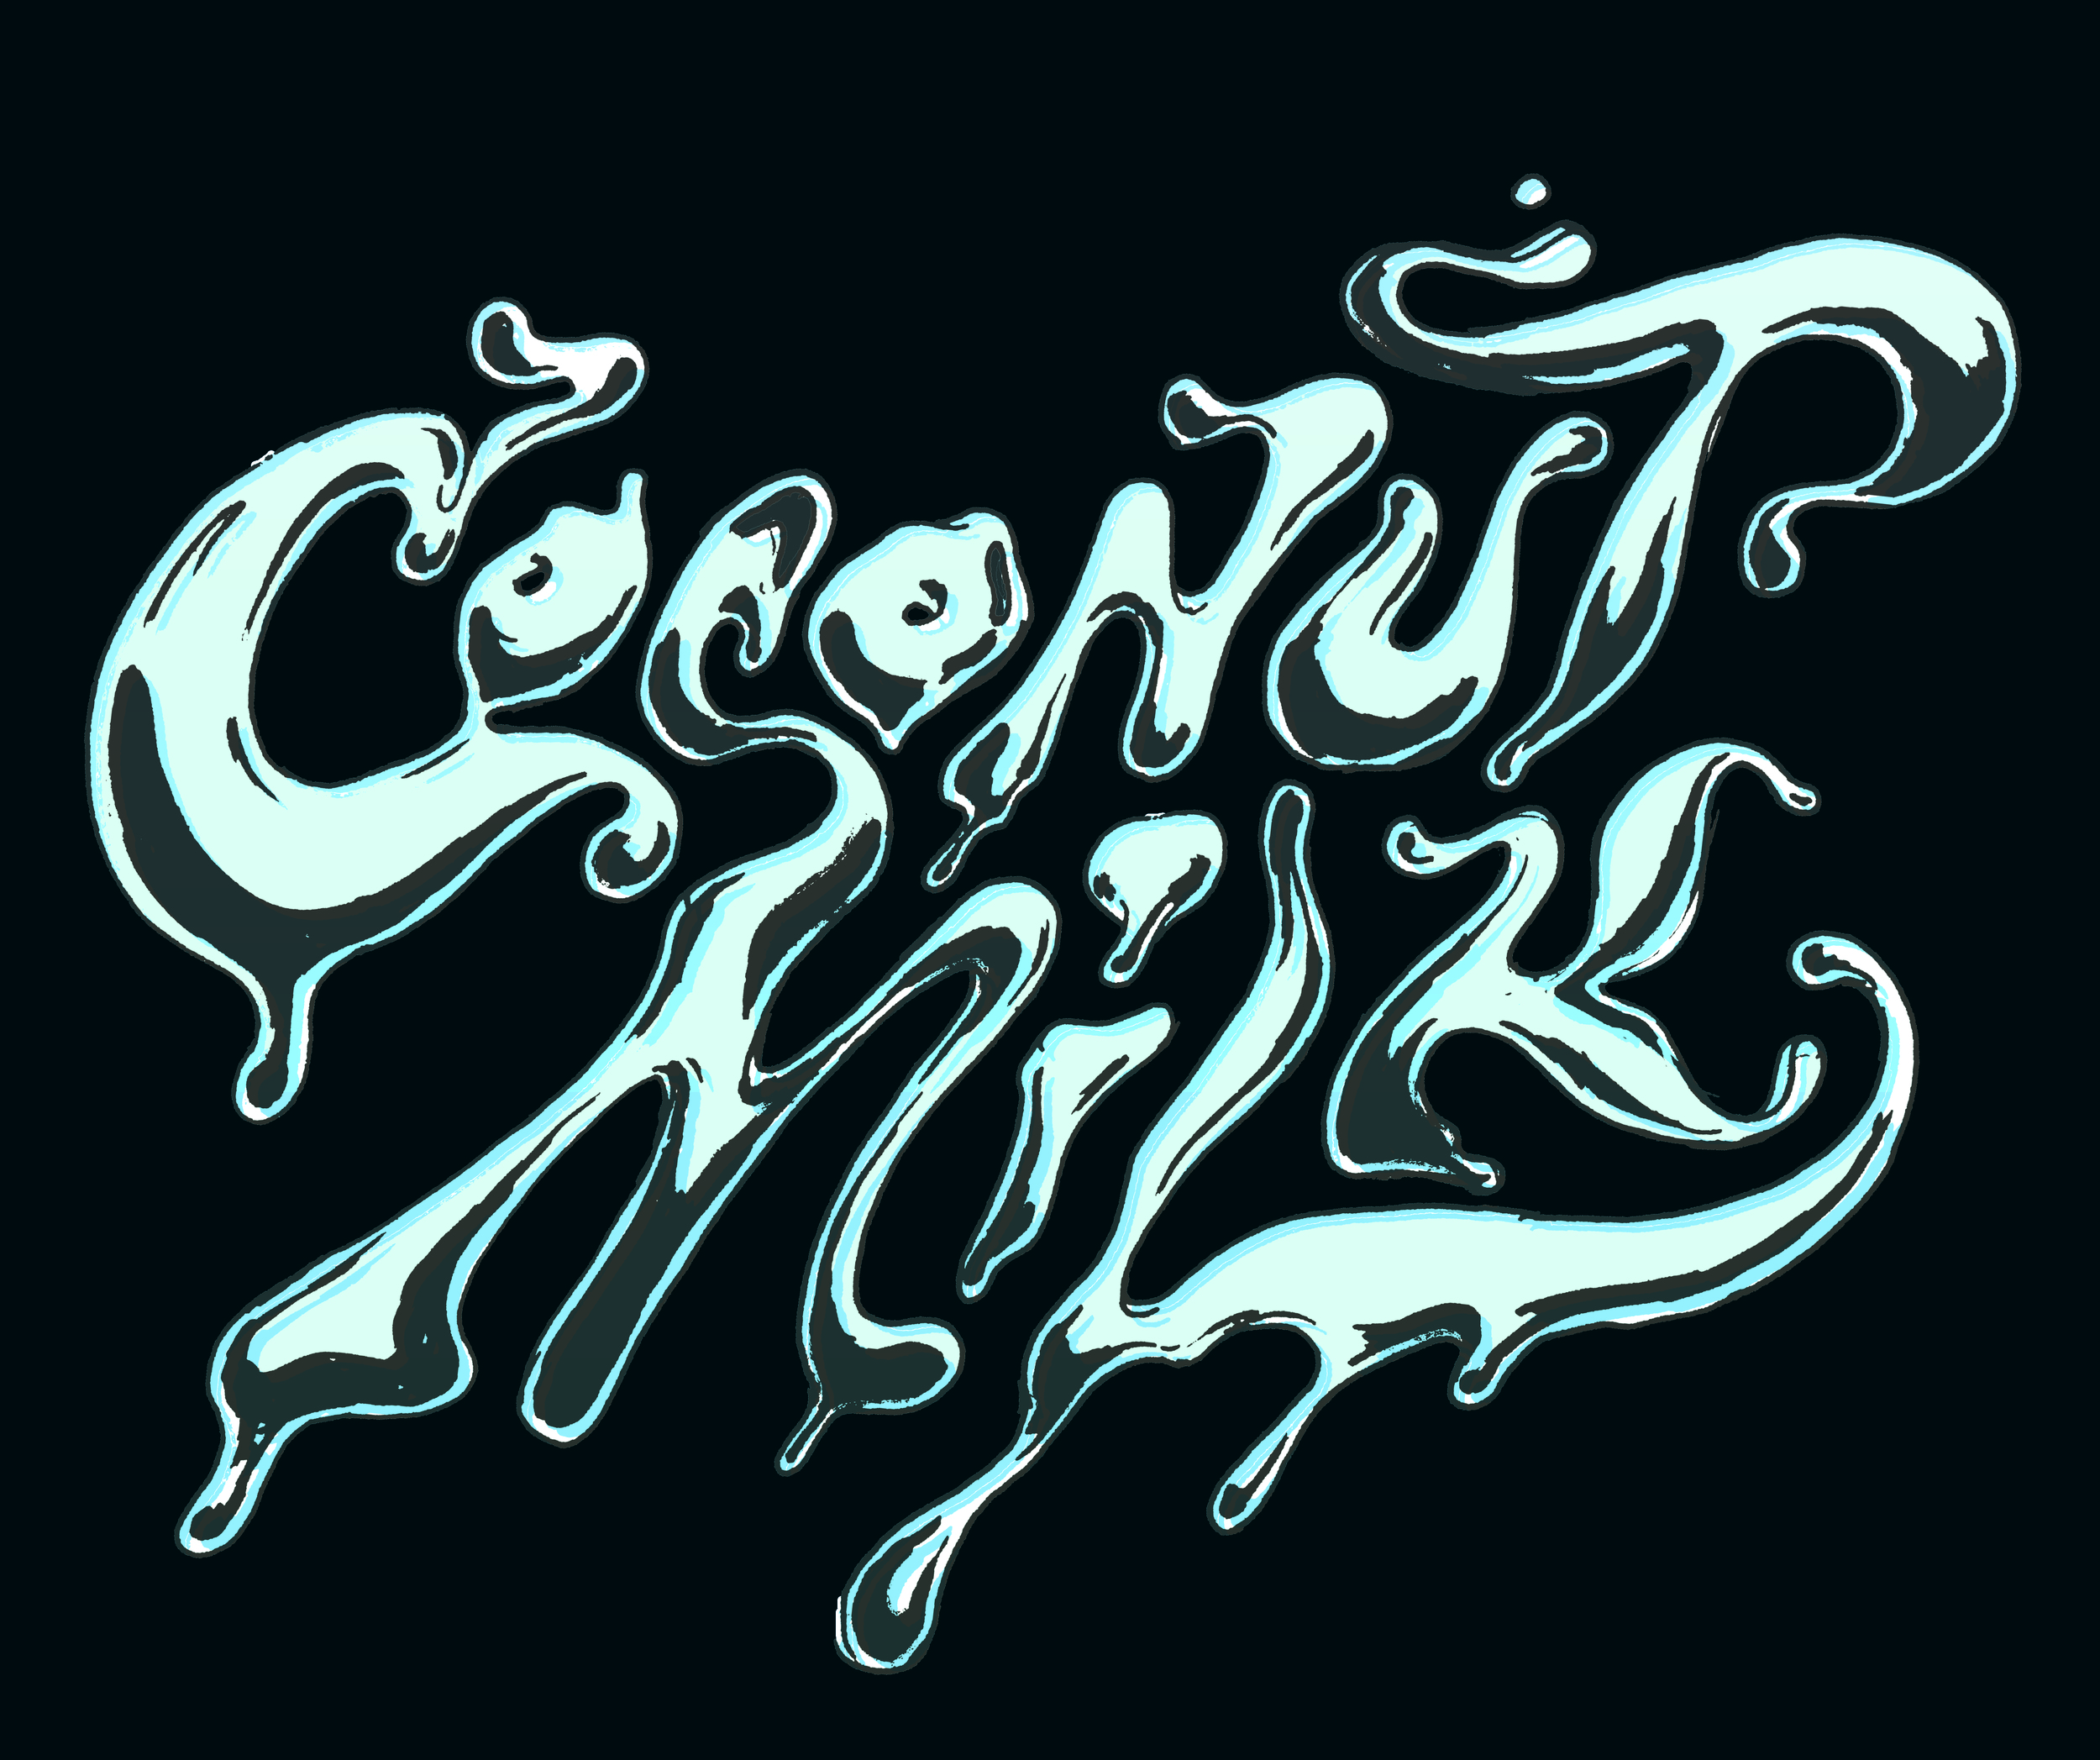 Coconut Milk "lactose logo"